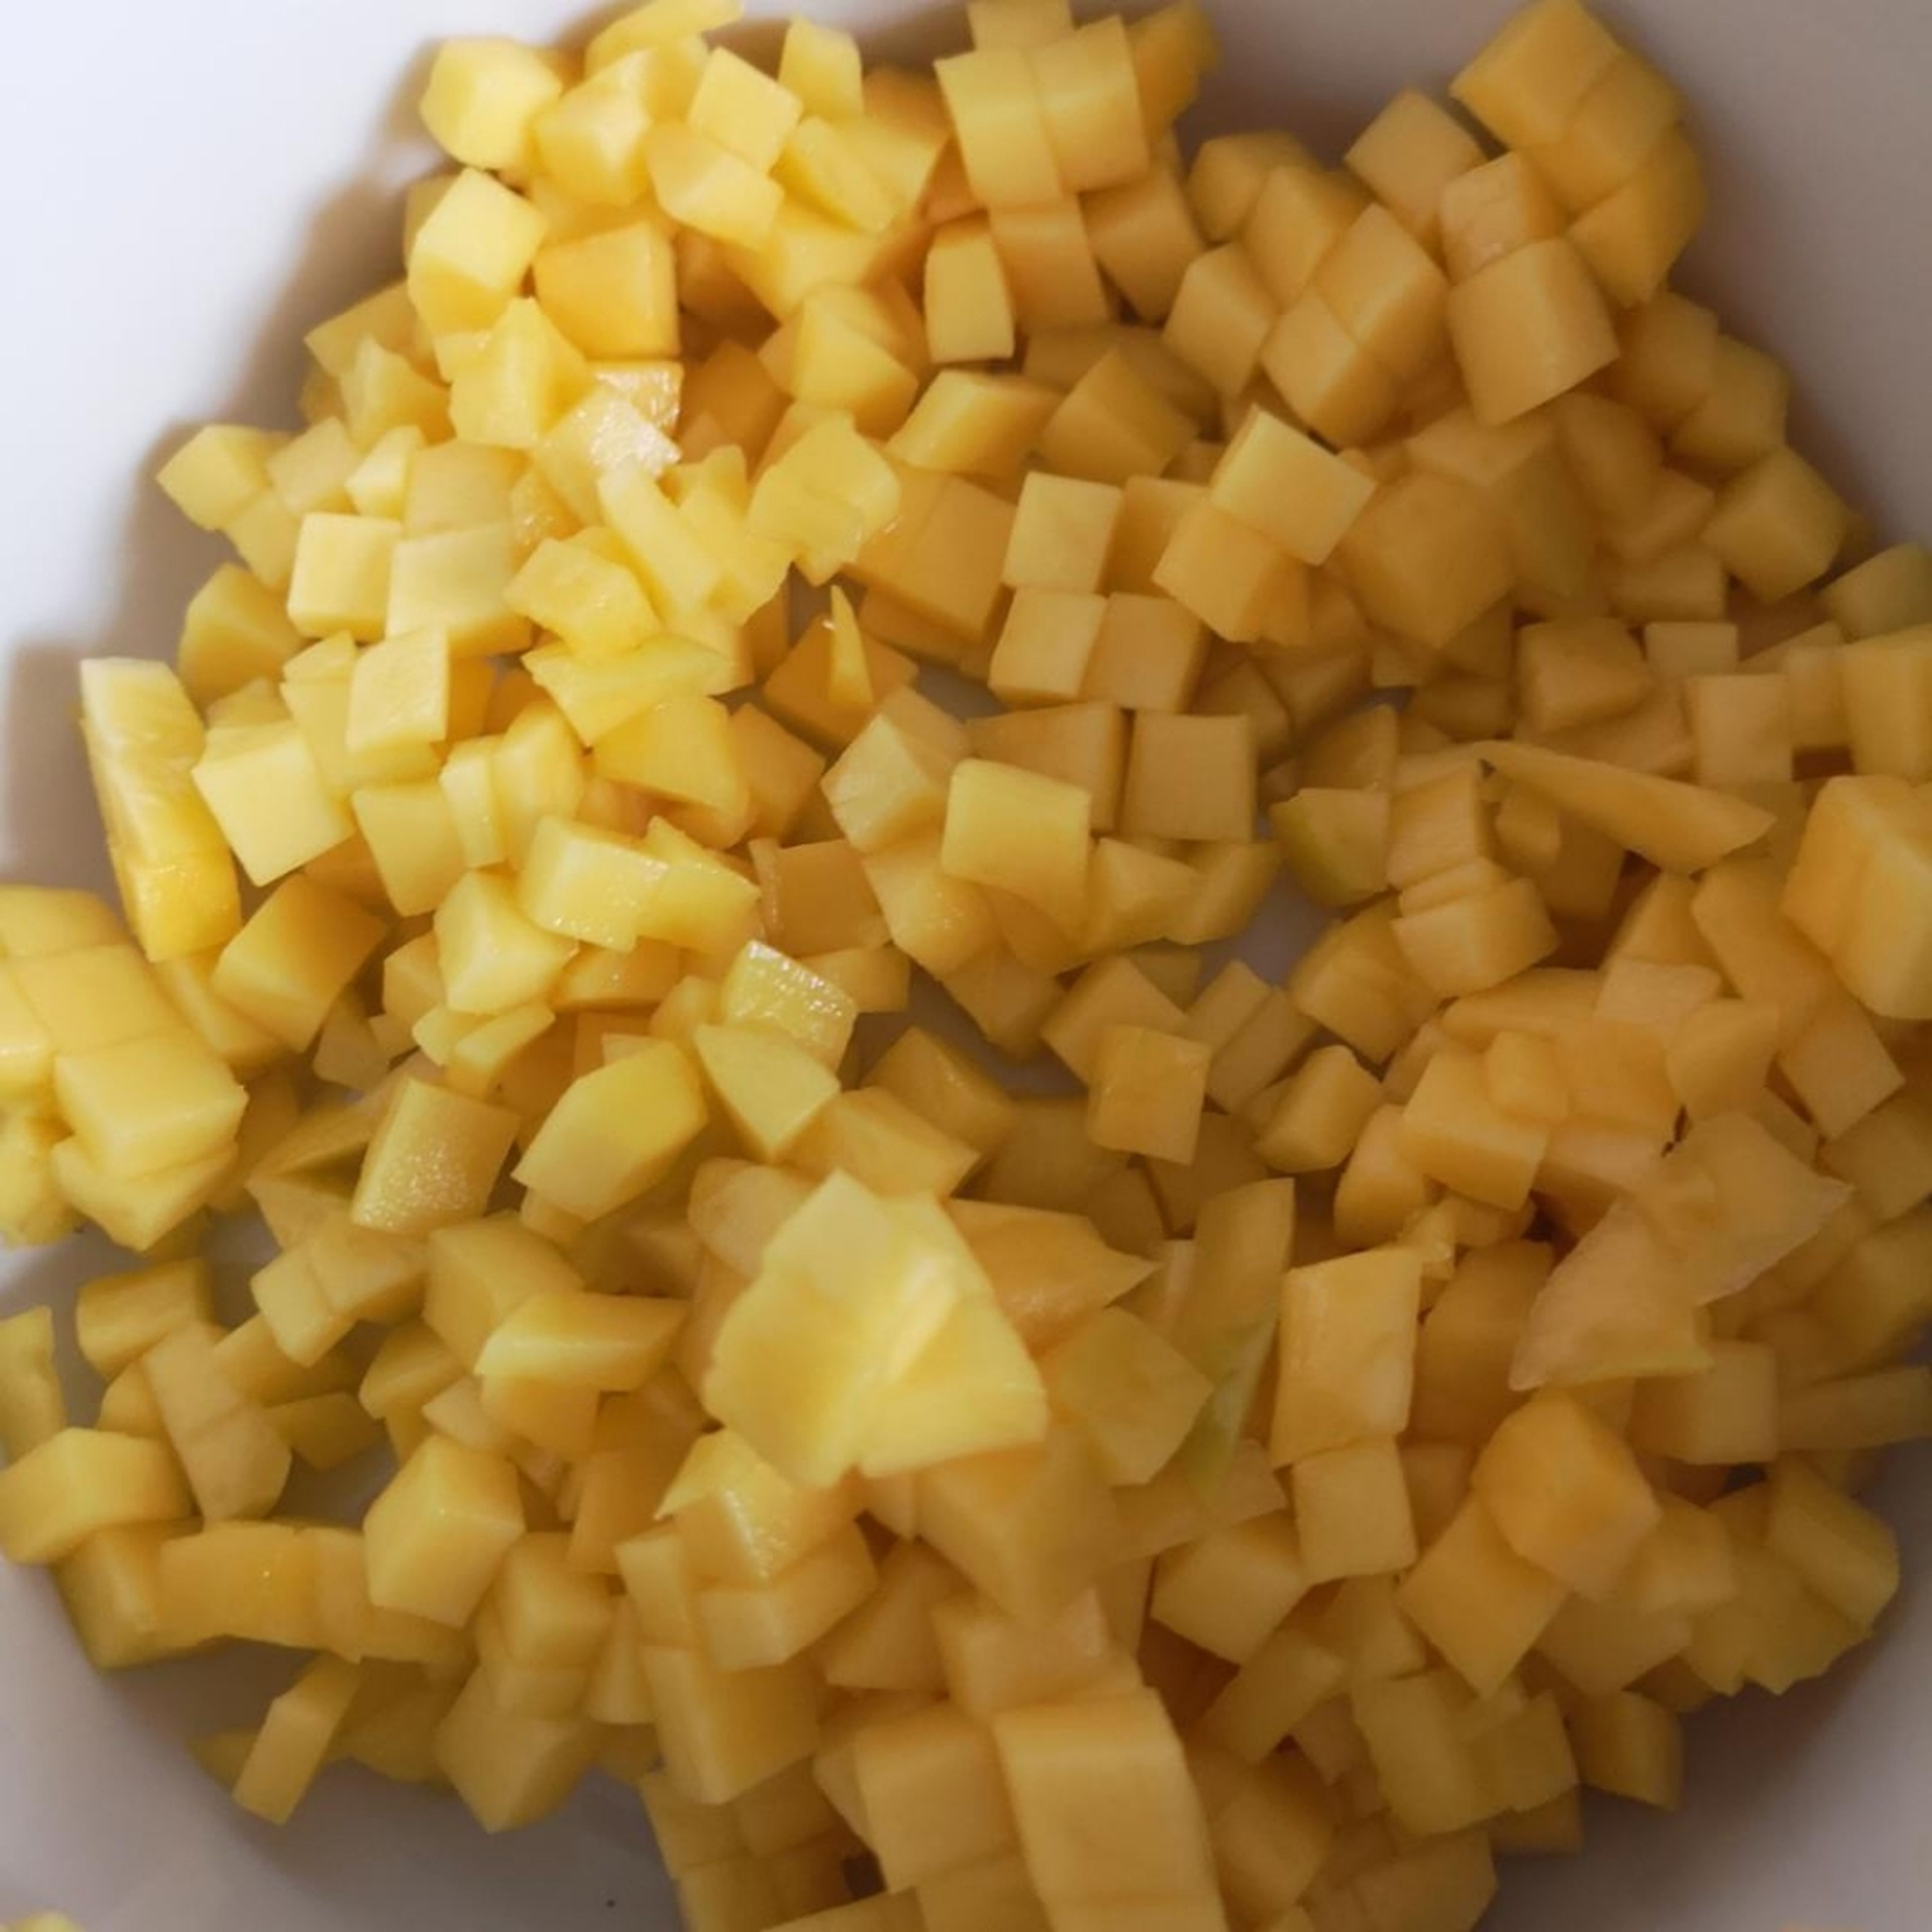 Mango schälen, entkernen und in kleine Würfel schneiden. Die gewürfelte Mango in eine Schüssel geben. 2-3 EL Mango fürs Toppingiin einem Glas beiseite legen.